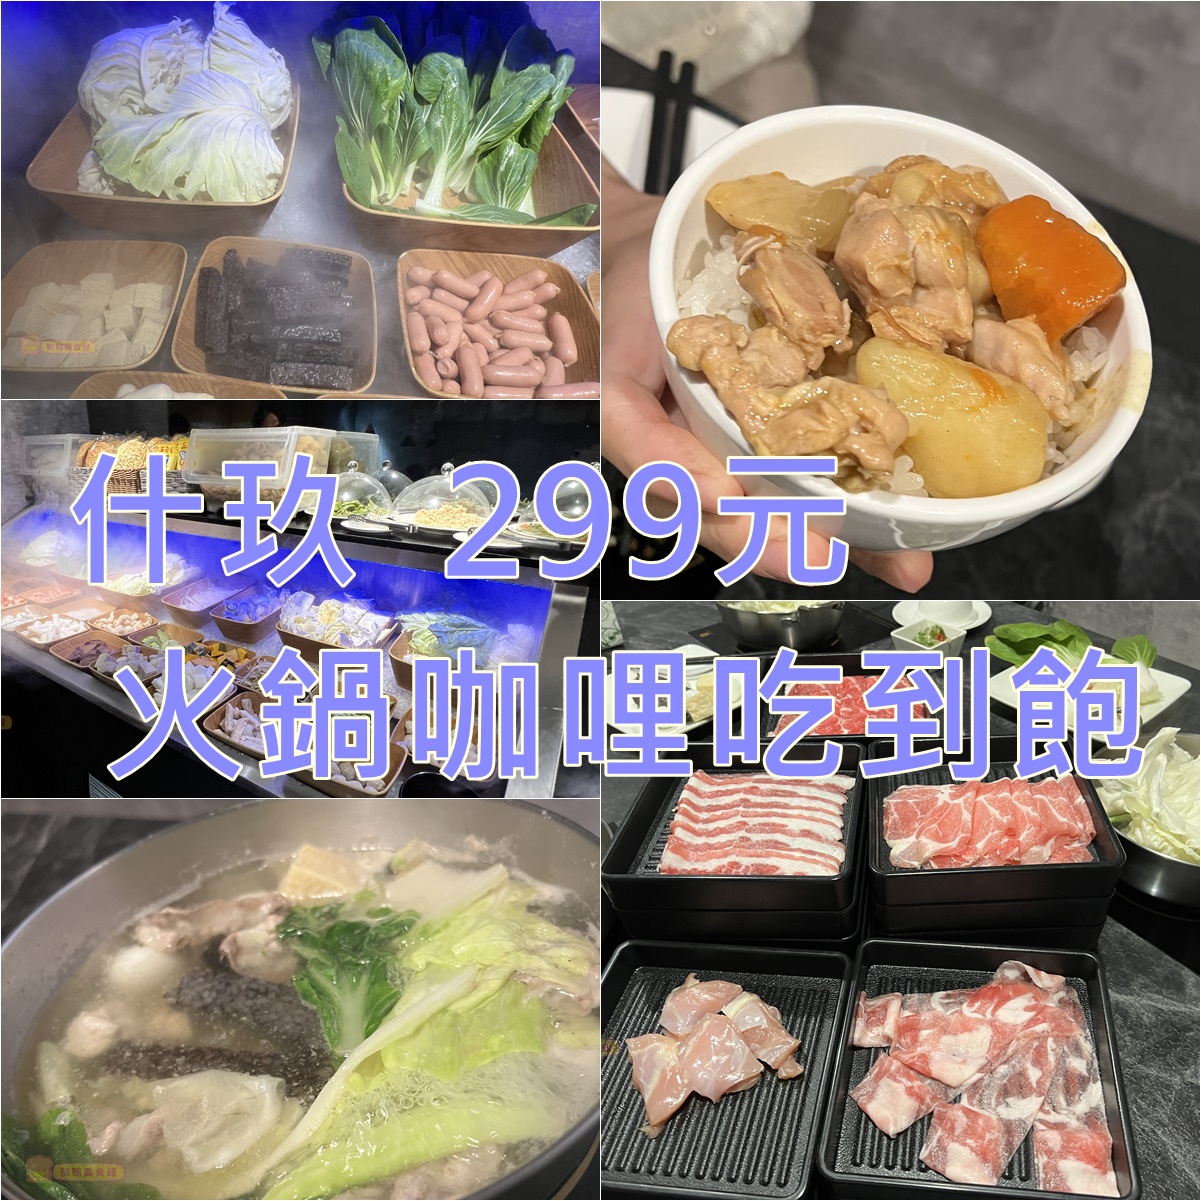 (4)台北中山區。什玖日式鍋物~299元咖哩飯加肉片、鮮蔬、霜淇淋吃到飽